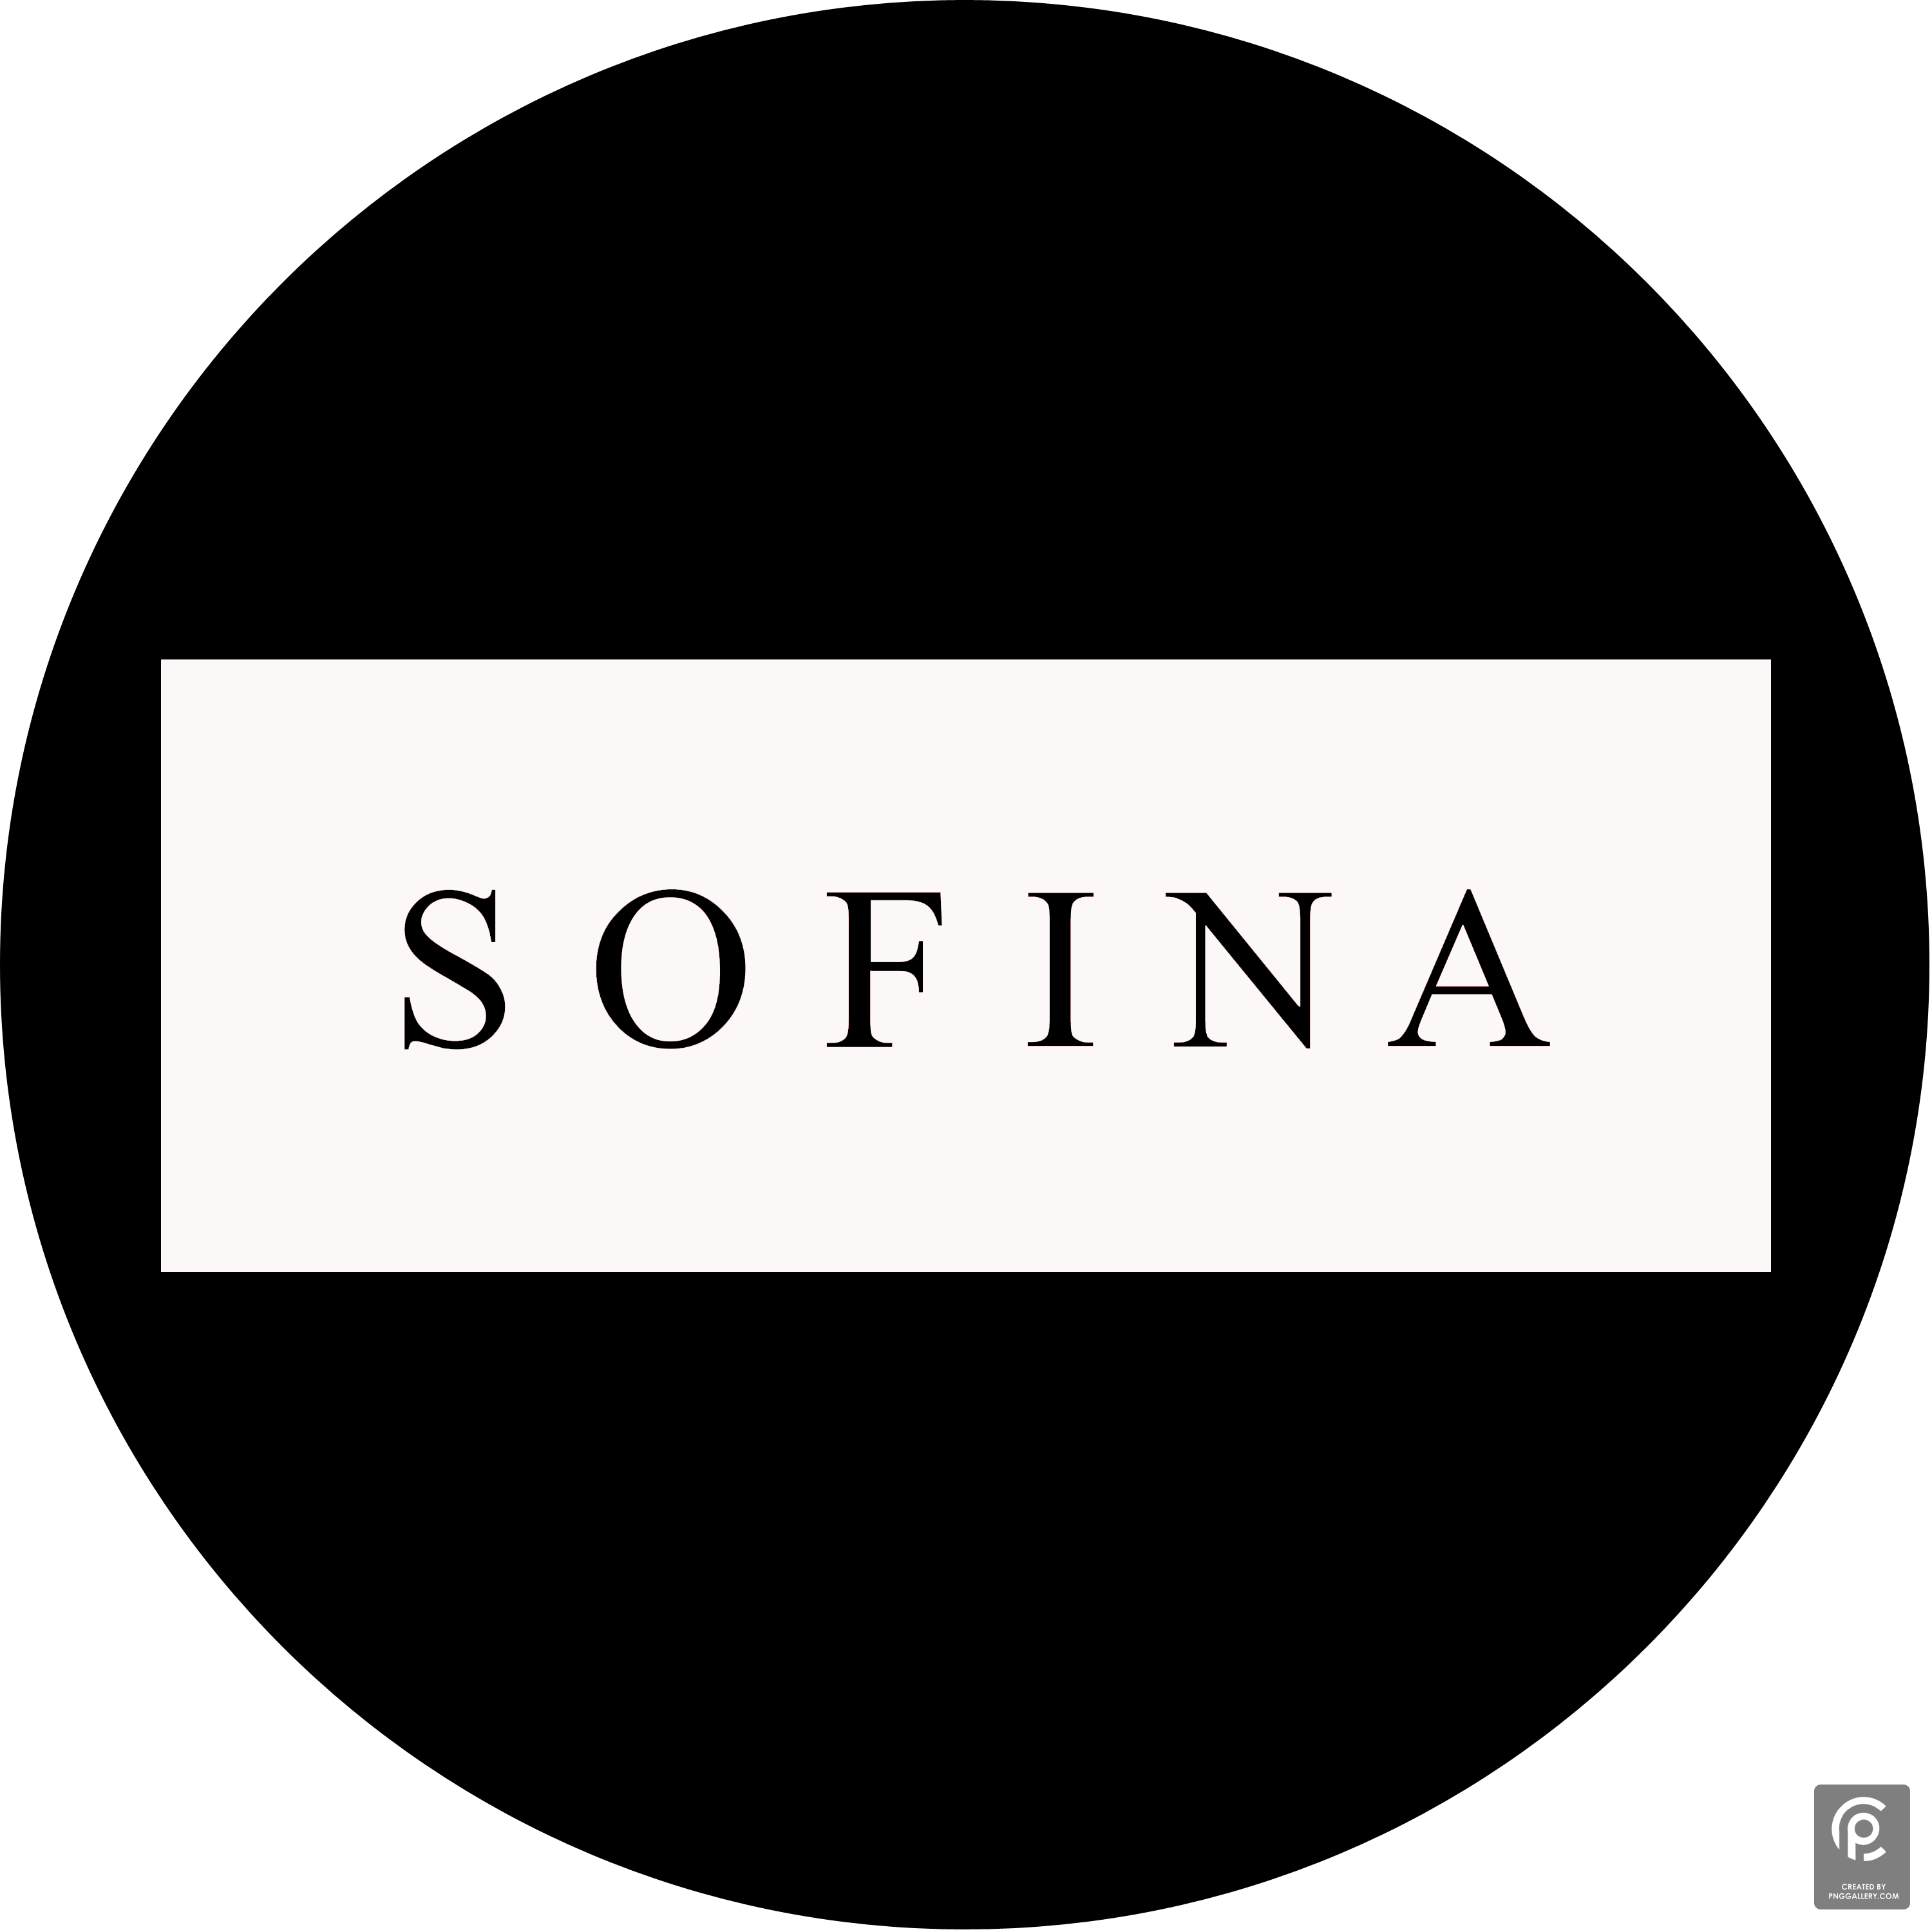 Sofina Logo Transparent Gallery